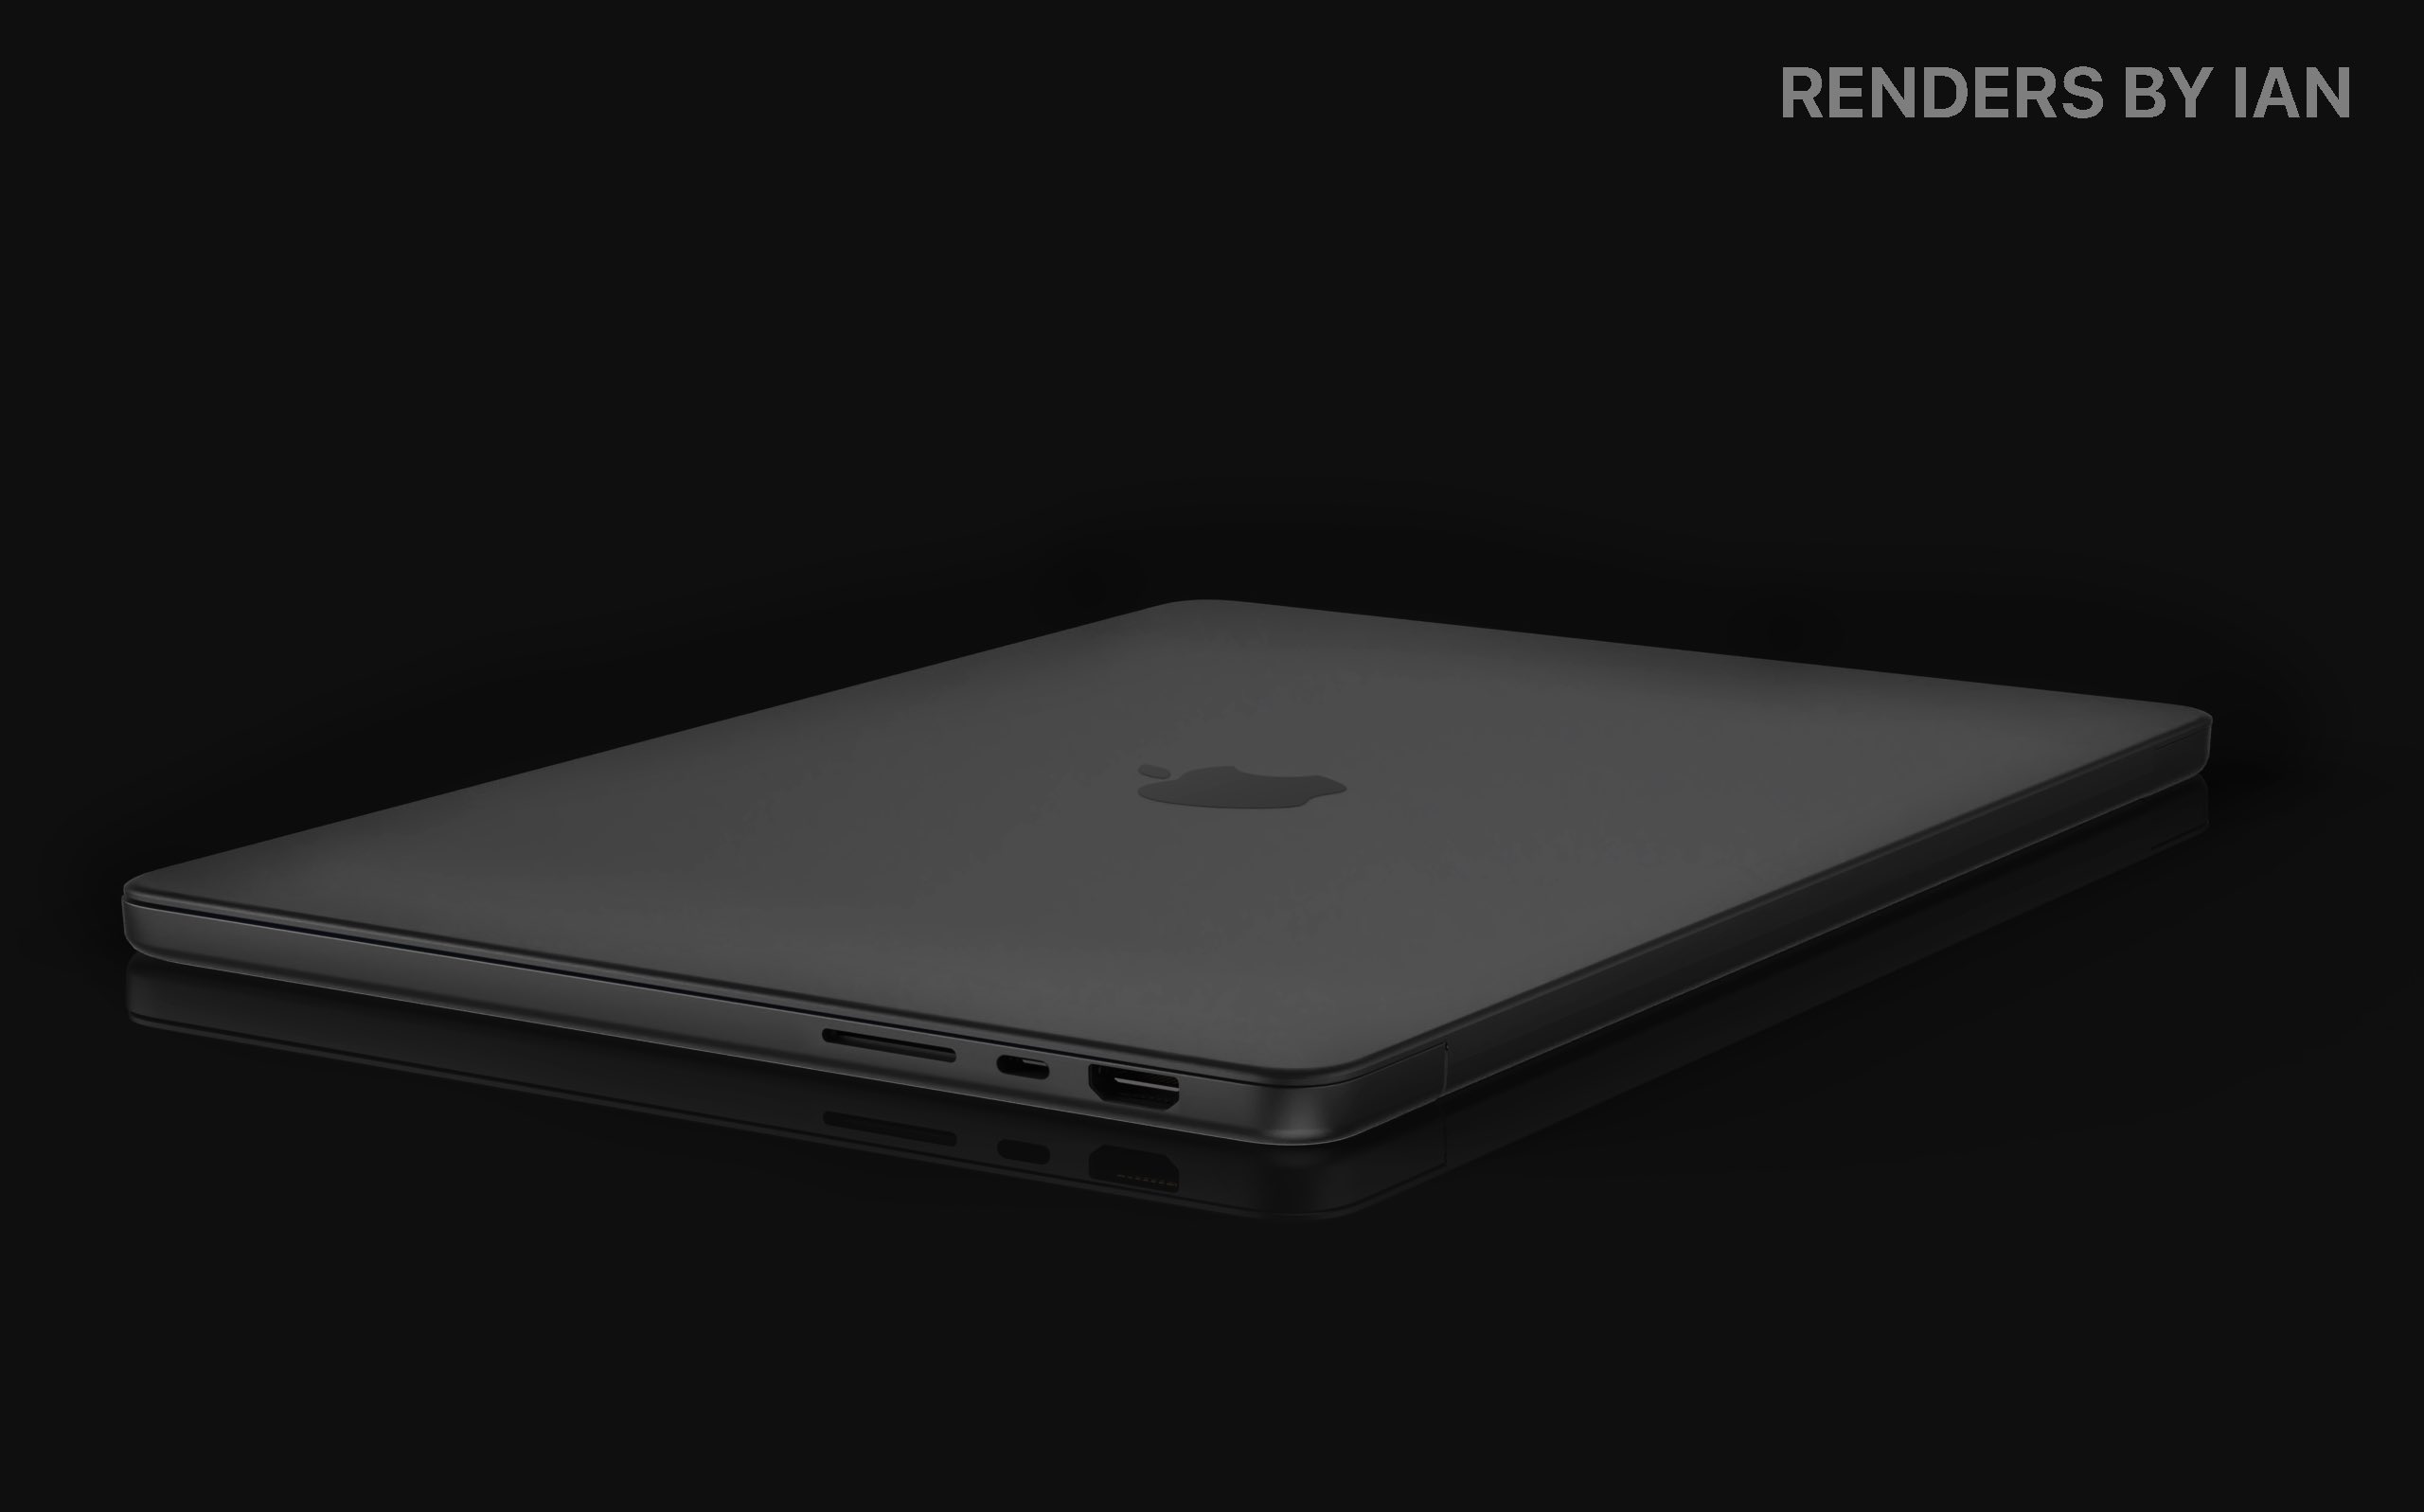 رندر مک بوک پرو ۱۴ اینچی جدید اپل را ببینید: ساده و جذاب مثل همیشه!